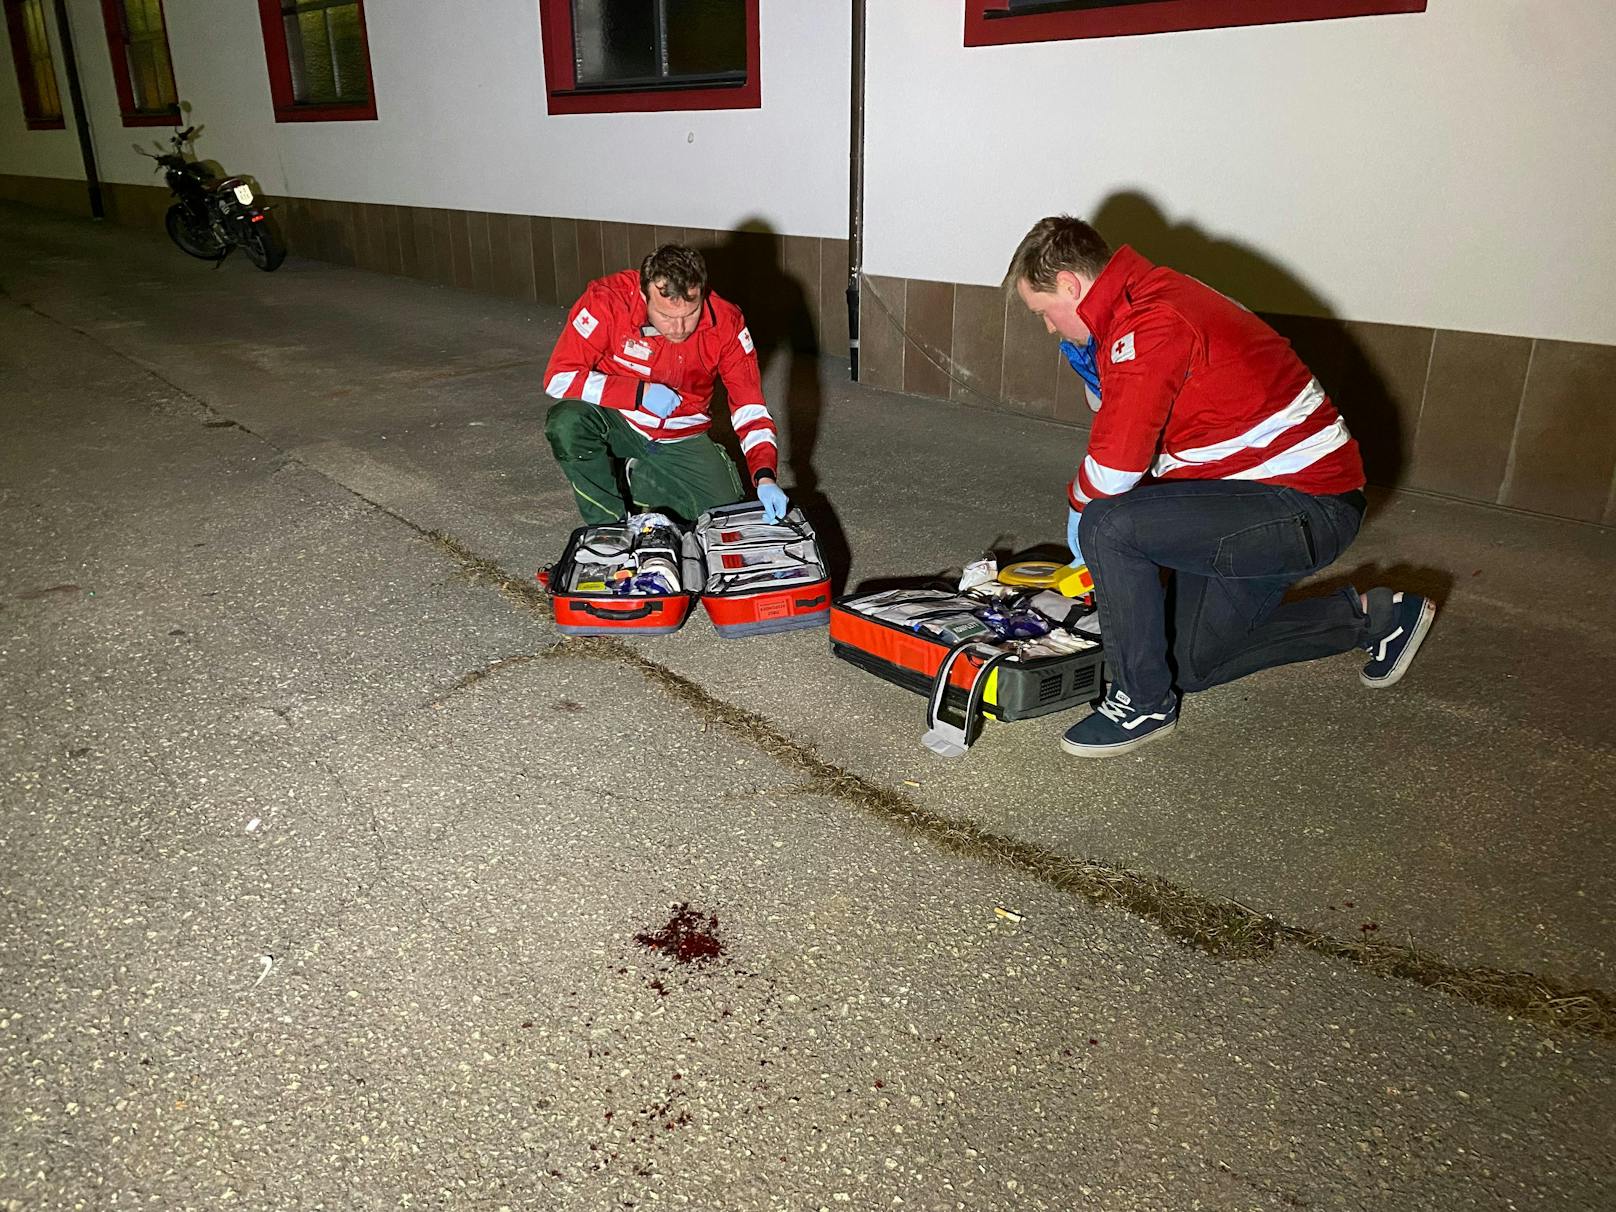 In Ebbs (Bezirk Kufstein) ist es am Freitagabend zu einer Messerattacke gekommen. Ersten Informationen zufolge ist ein Jugendlicher niedergestochen worden. 